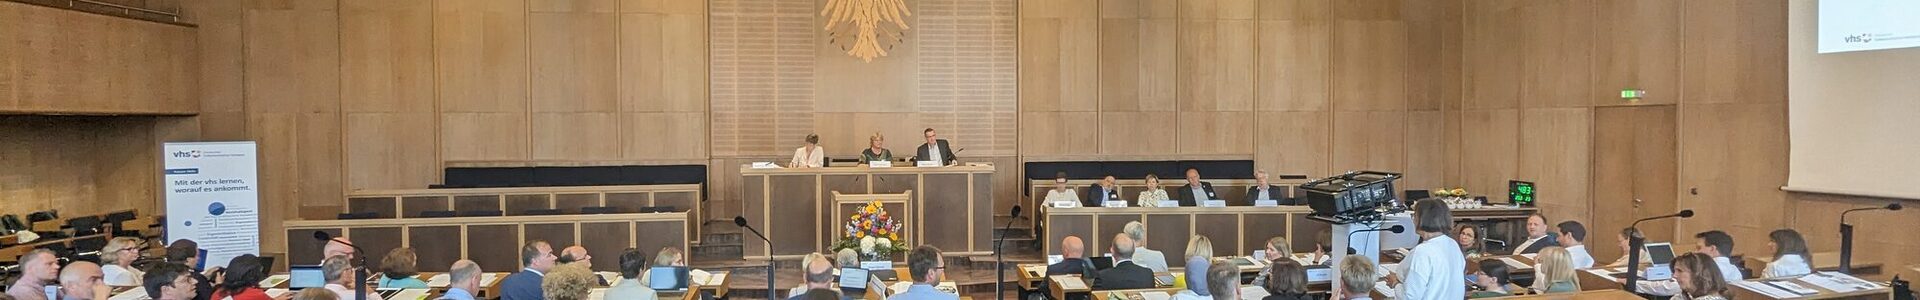 Mitgliederversammlung des DVV im Plenarsaal des Römer in Frankfurt